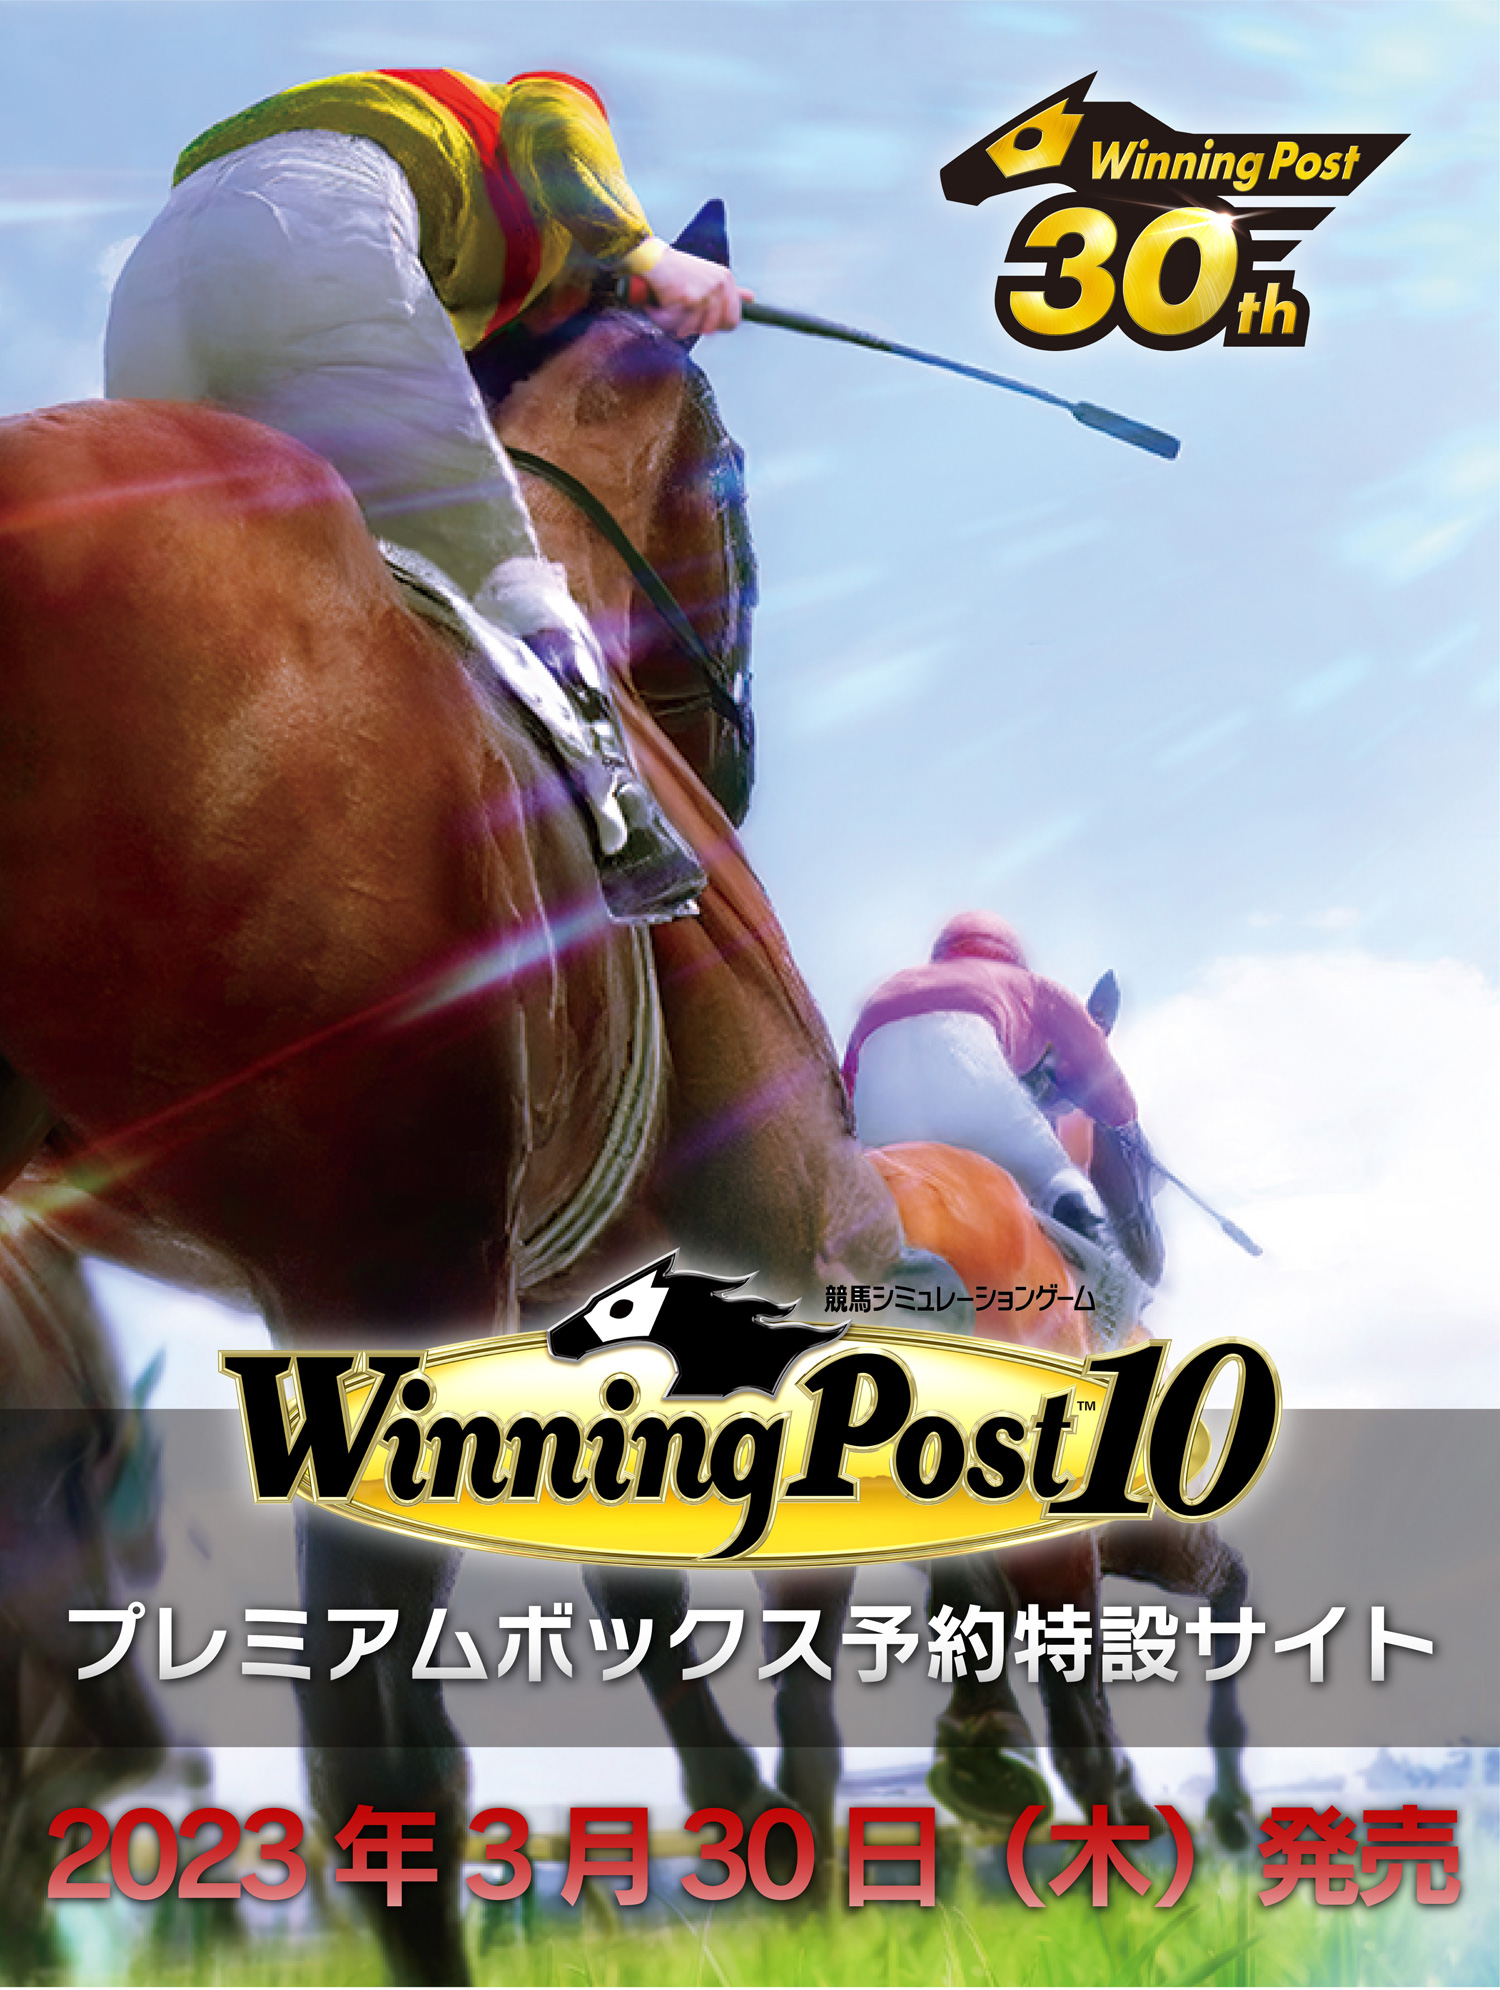 Winning Post 10』 予約受付中